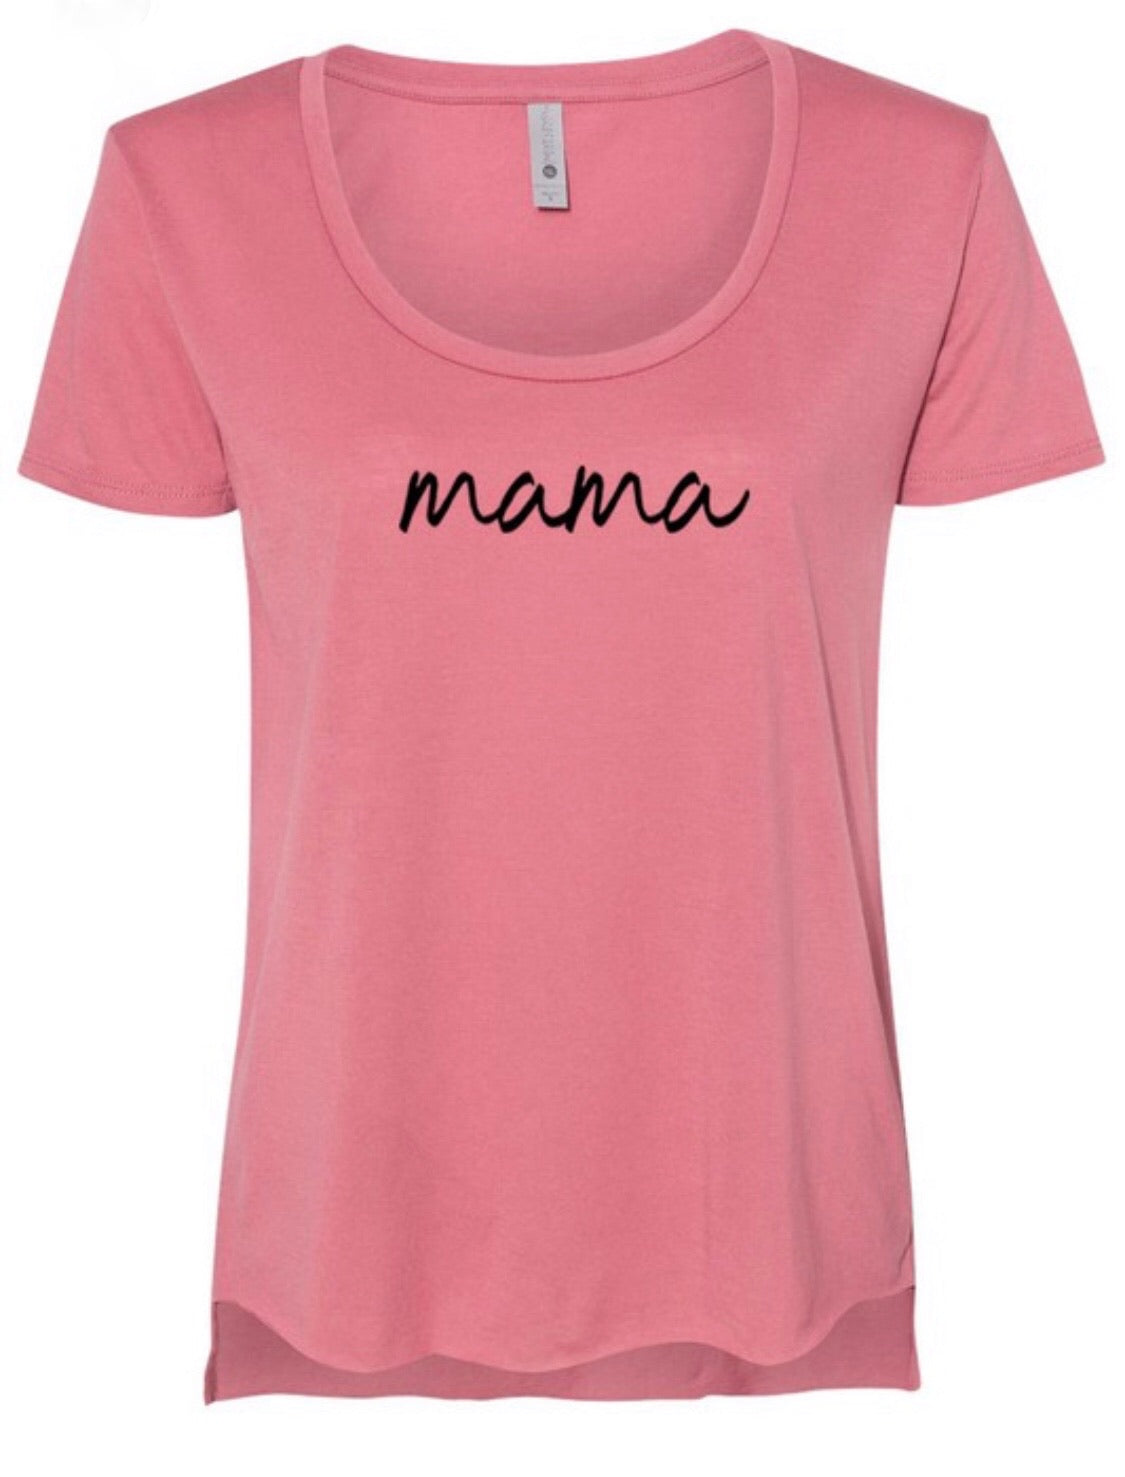 ‘Mama’ Tee - Coral Pink